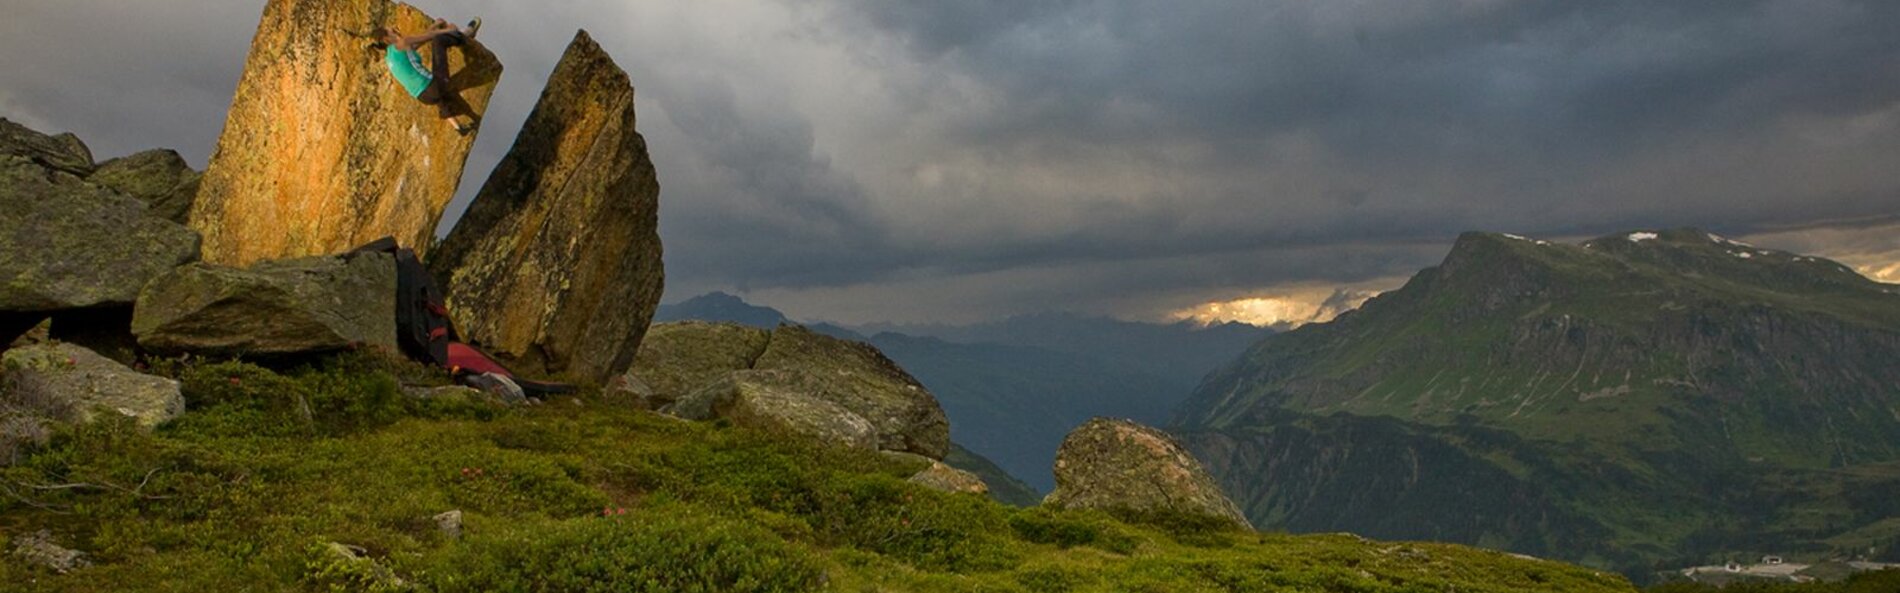 Felsblock steht in einer Wiese. Eine Frau klettert daran hinauf. Im Hintergrund ein Tal und Berge.